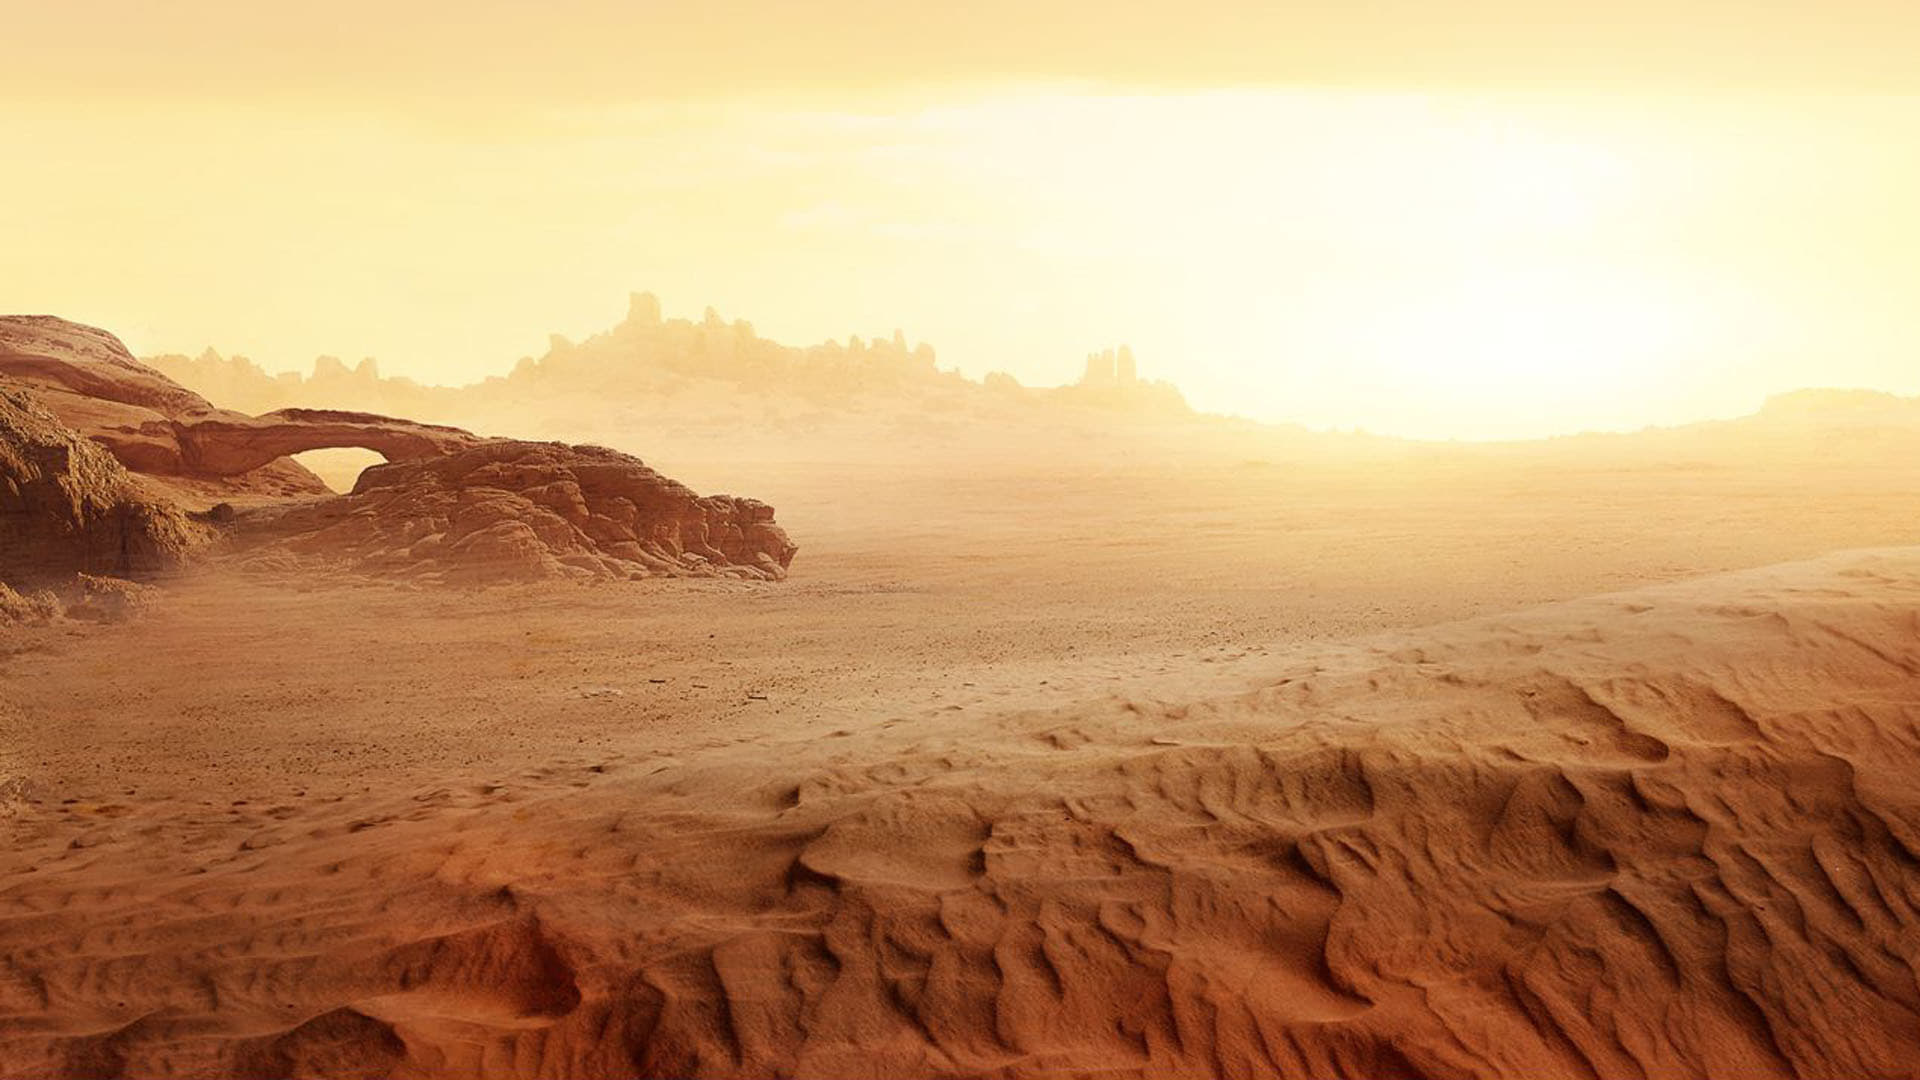 Arrakis, Dune der Wstenplanet, TV series, 2000 hintergrundbilder, 1920x1080 Full HD Desktop